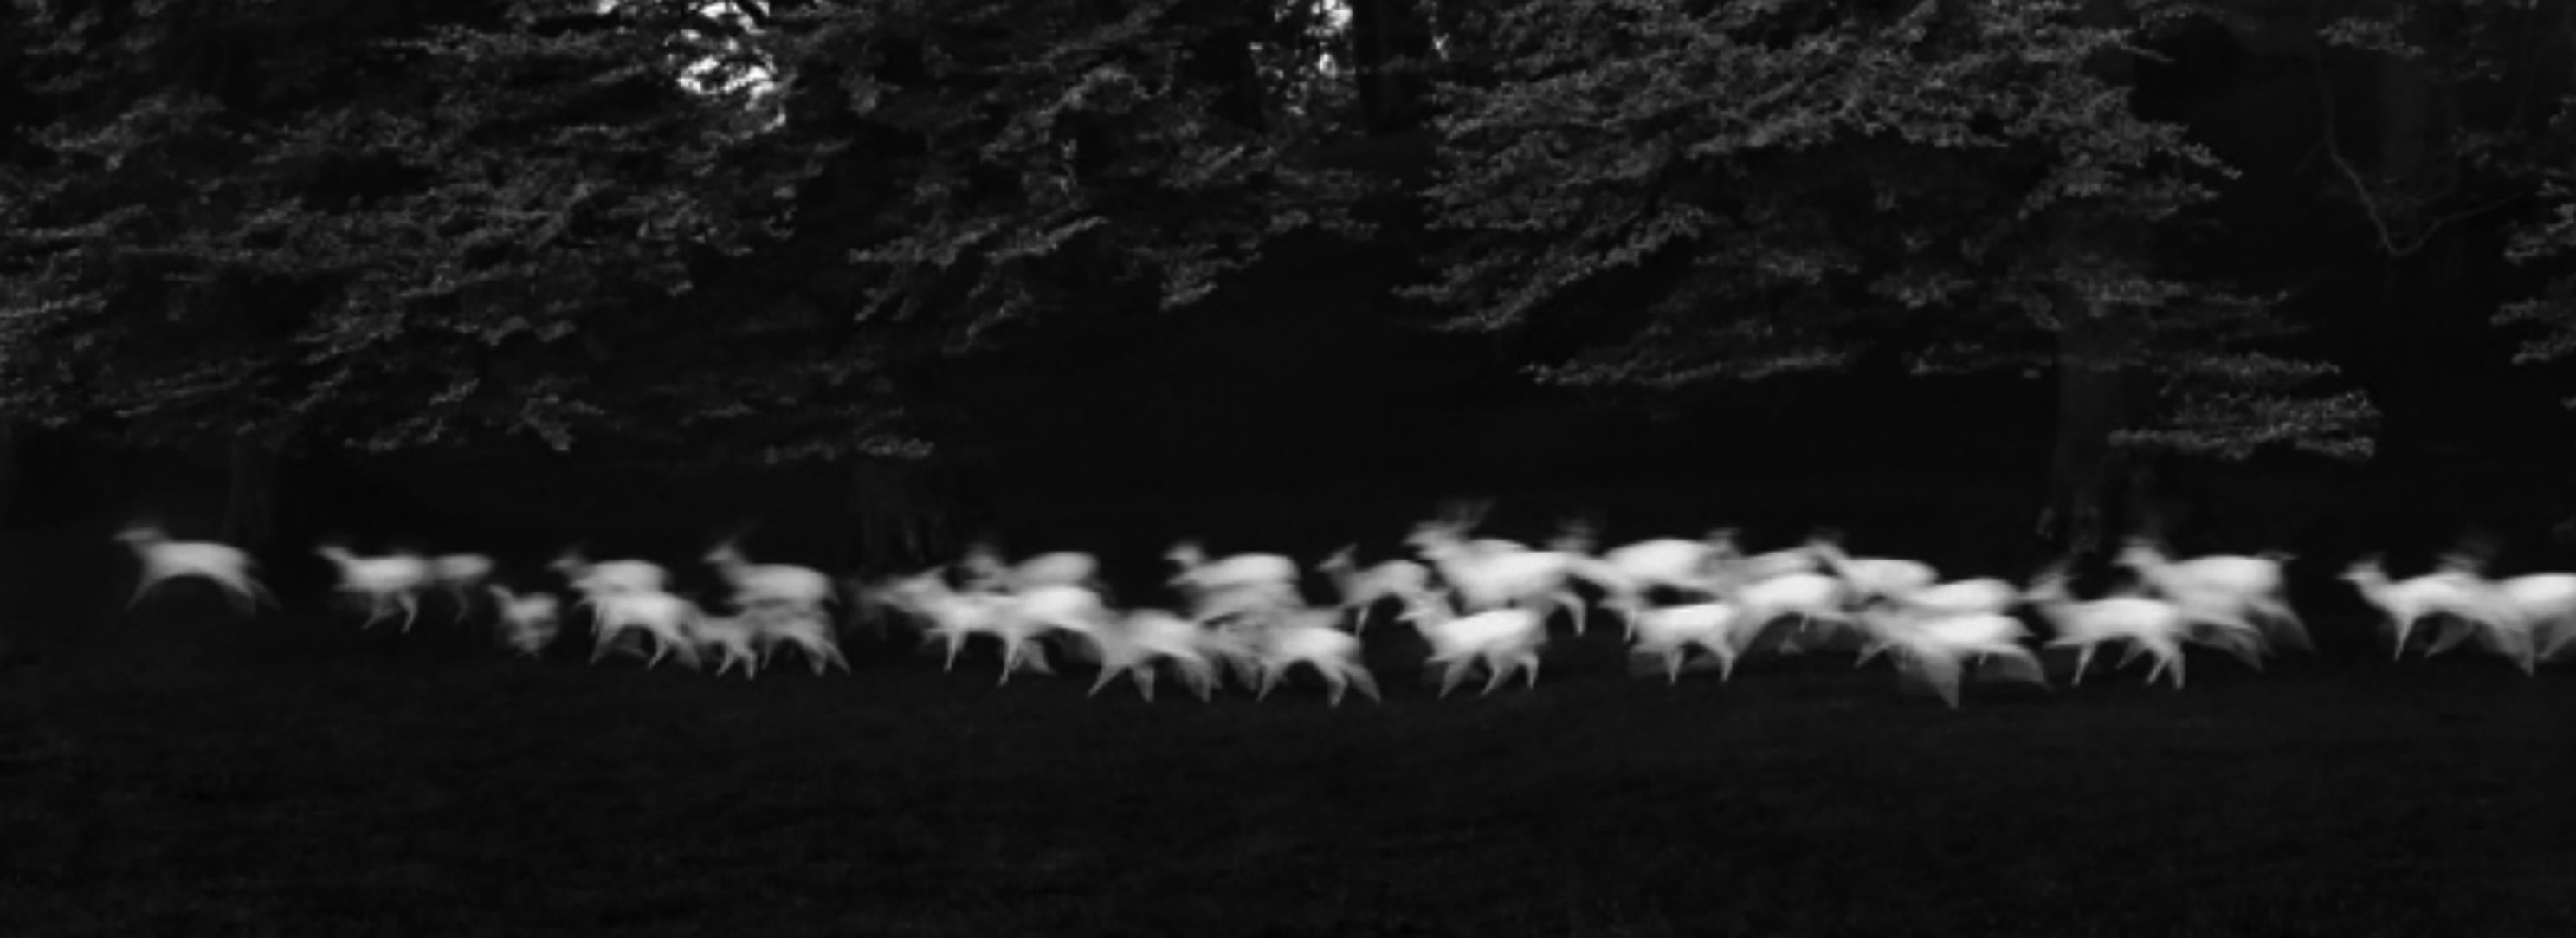 Running White Deer, Wicklow, Irland